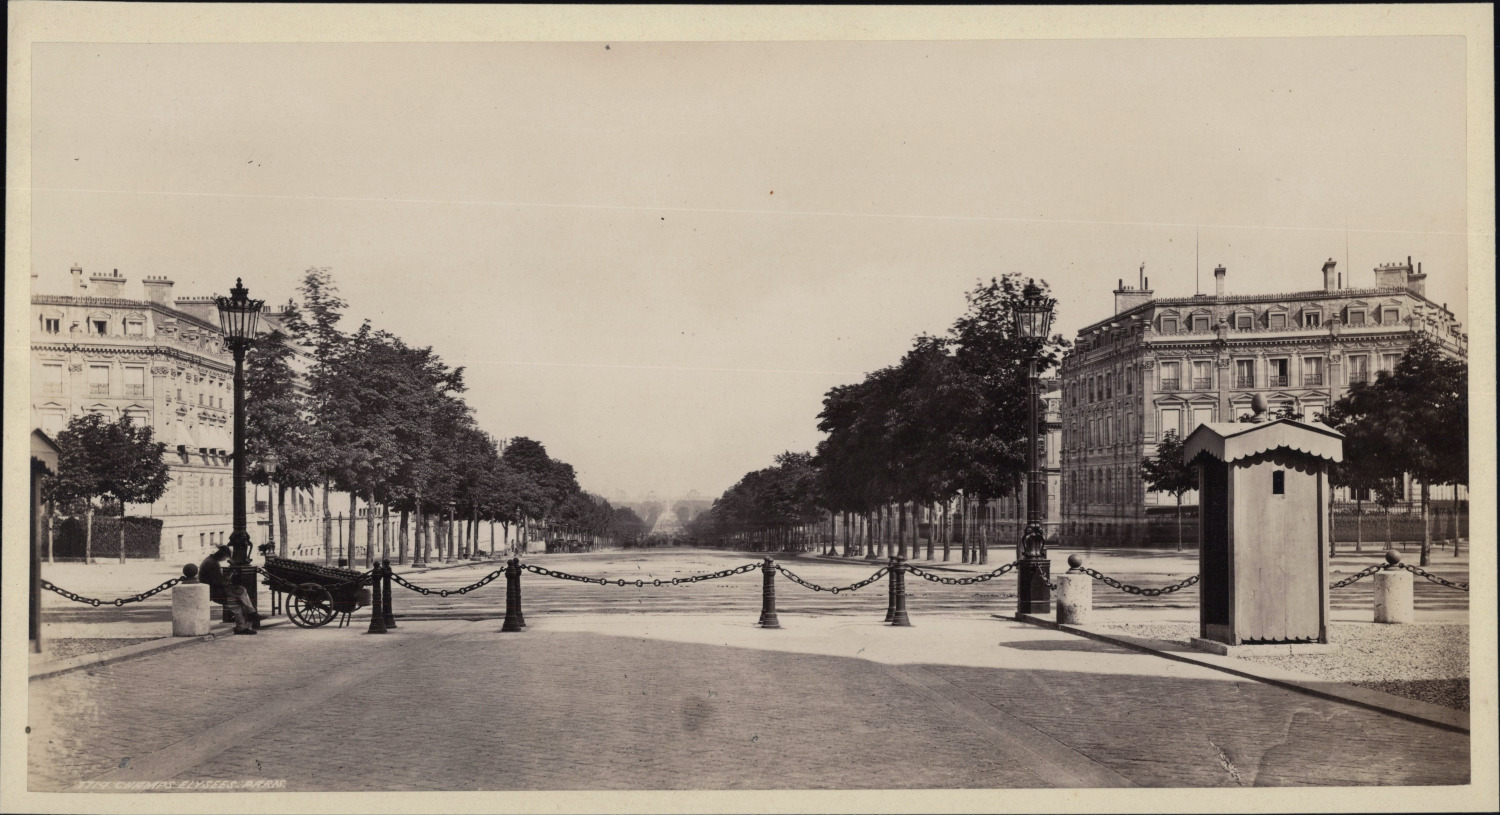 France, Paris, Universal Exhibition of 1878, Champs-Elysées, traveling merchant